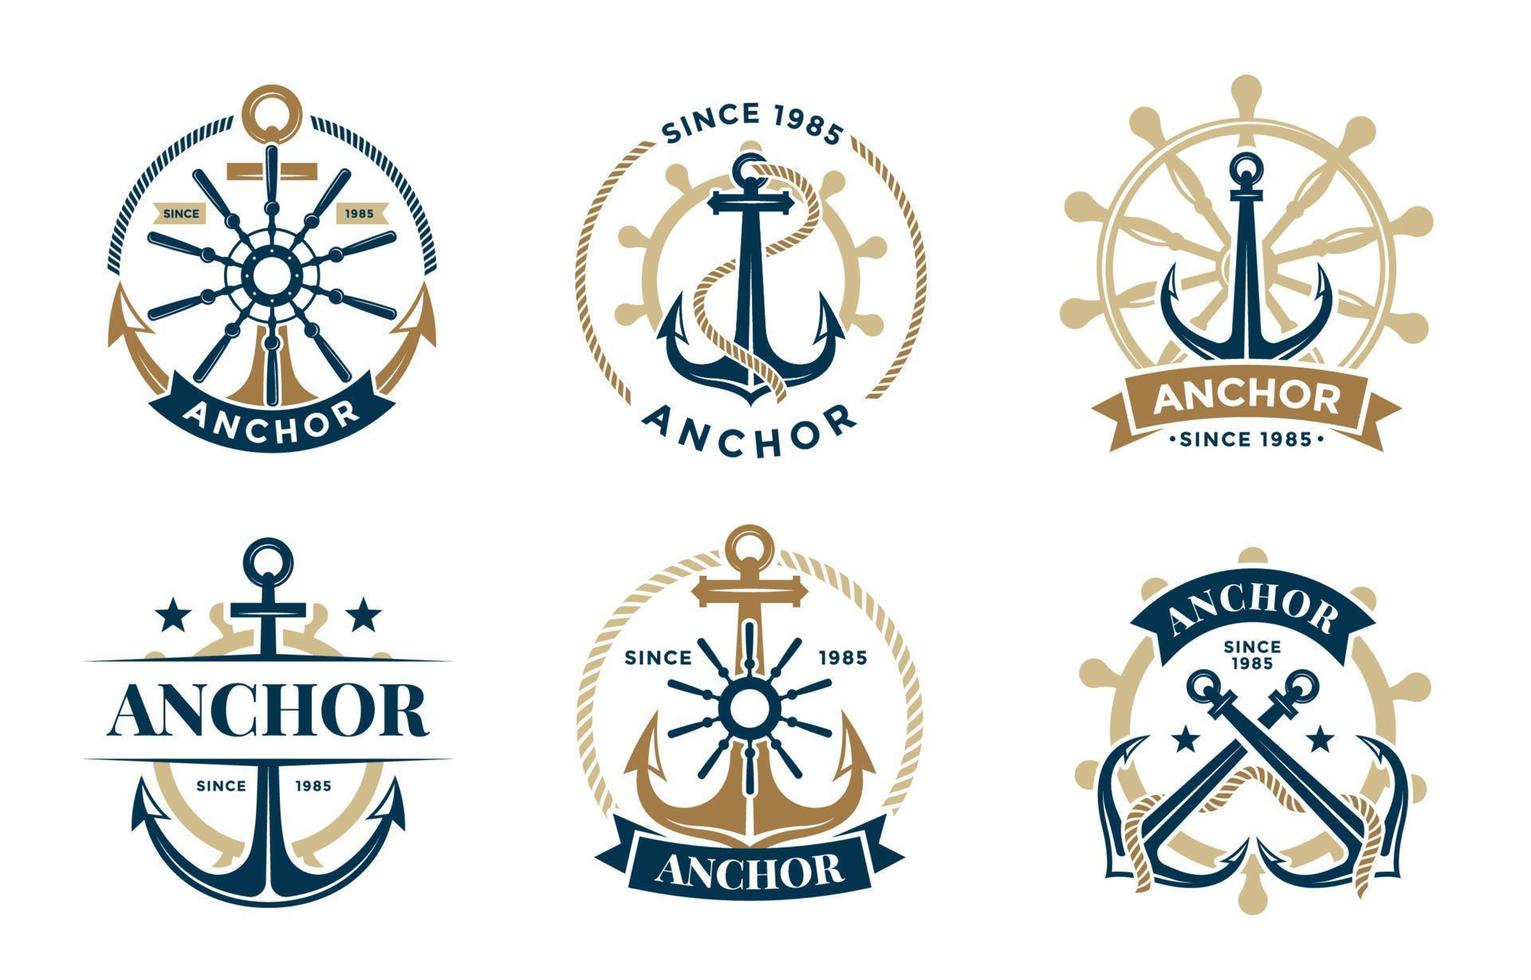 schip anker logo reeks vector